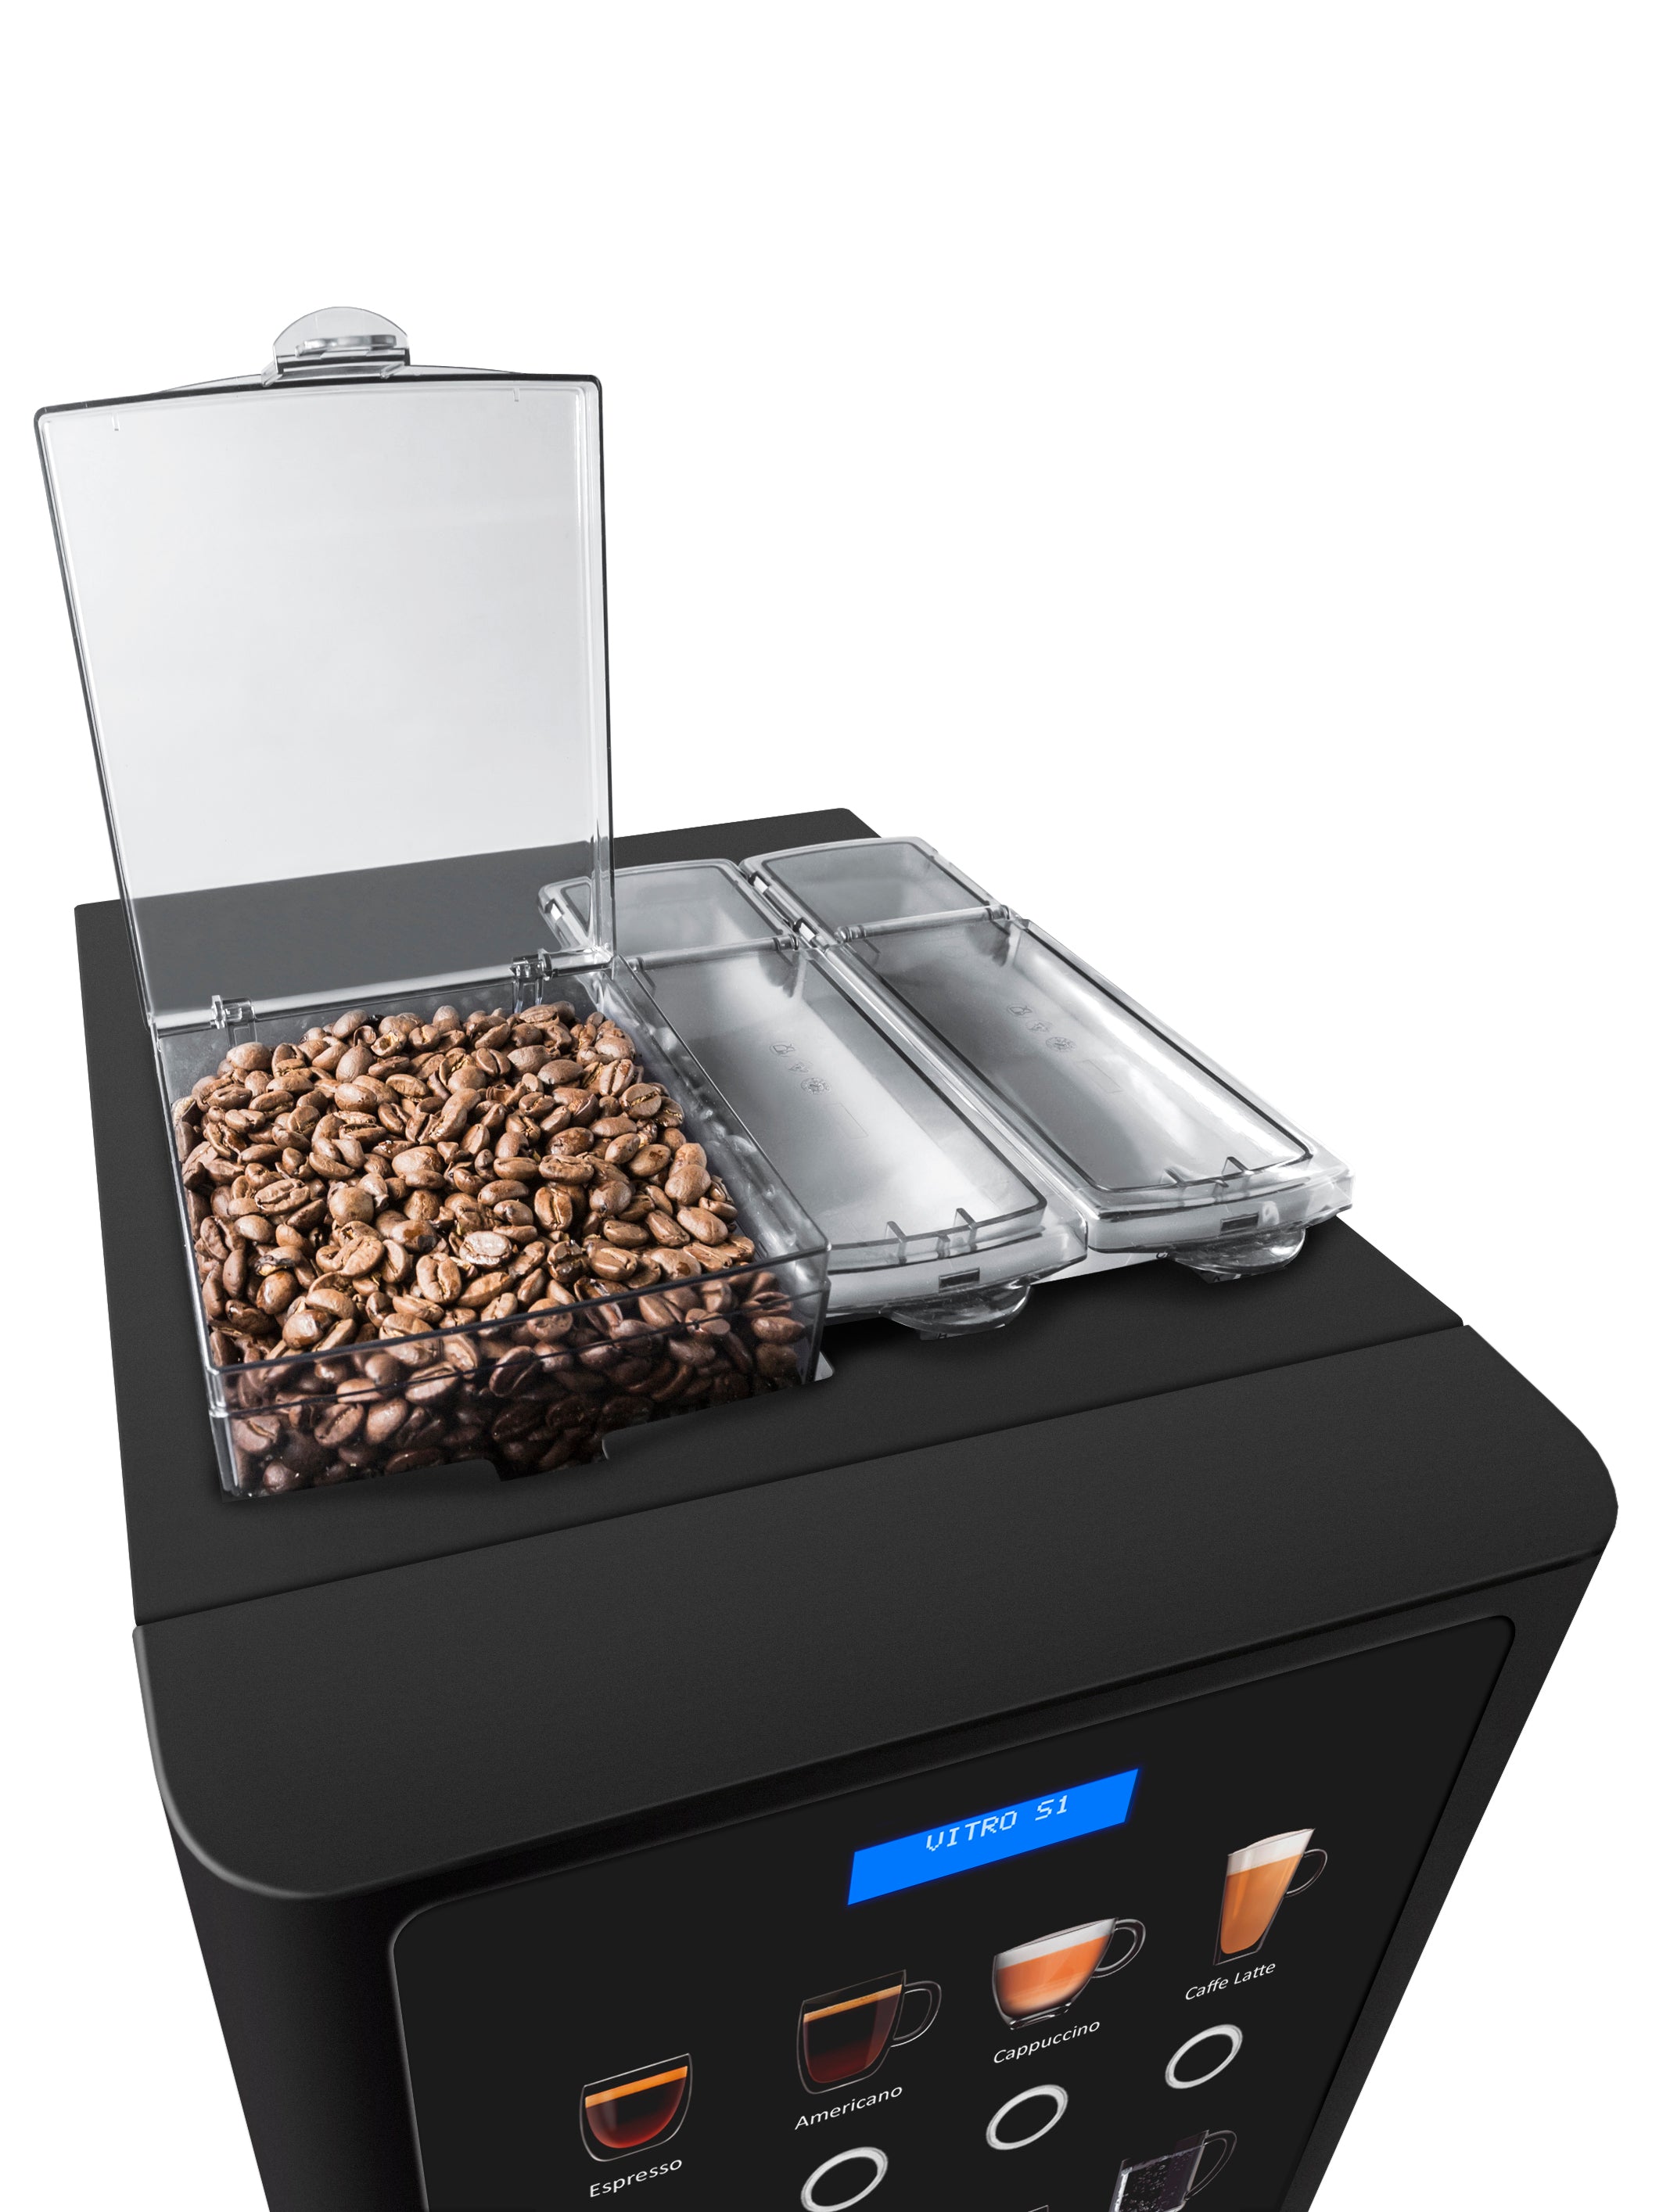 Vitro S1 Tabletop Coffee Machine (Espresso Version)